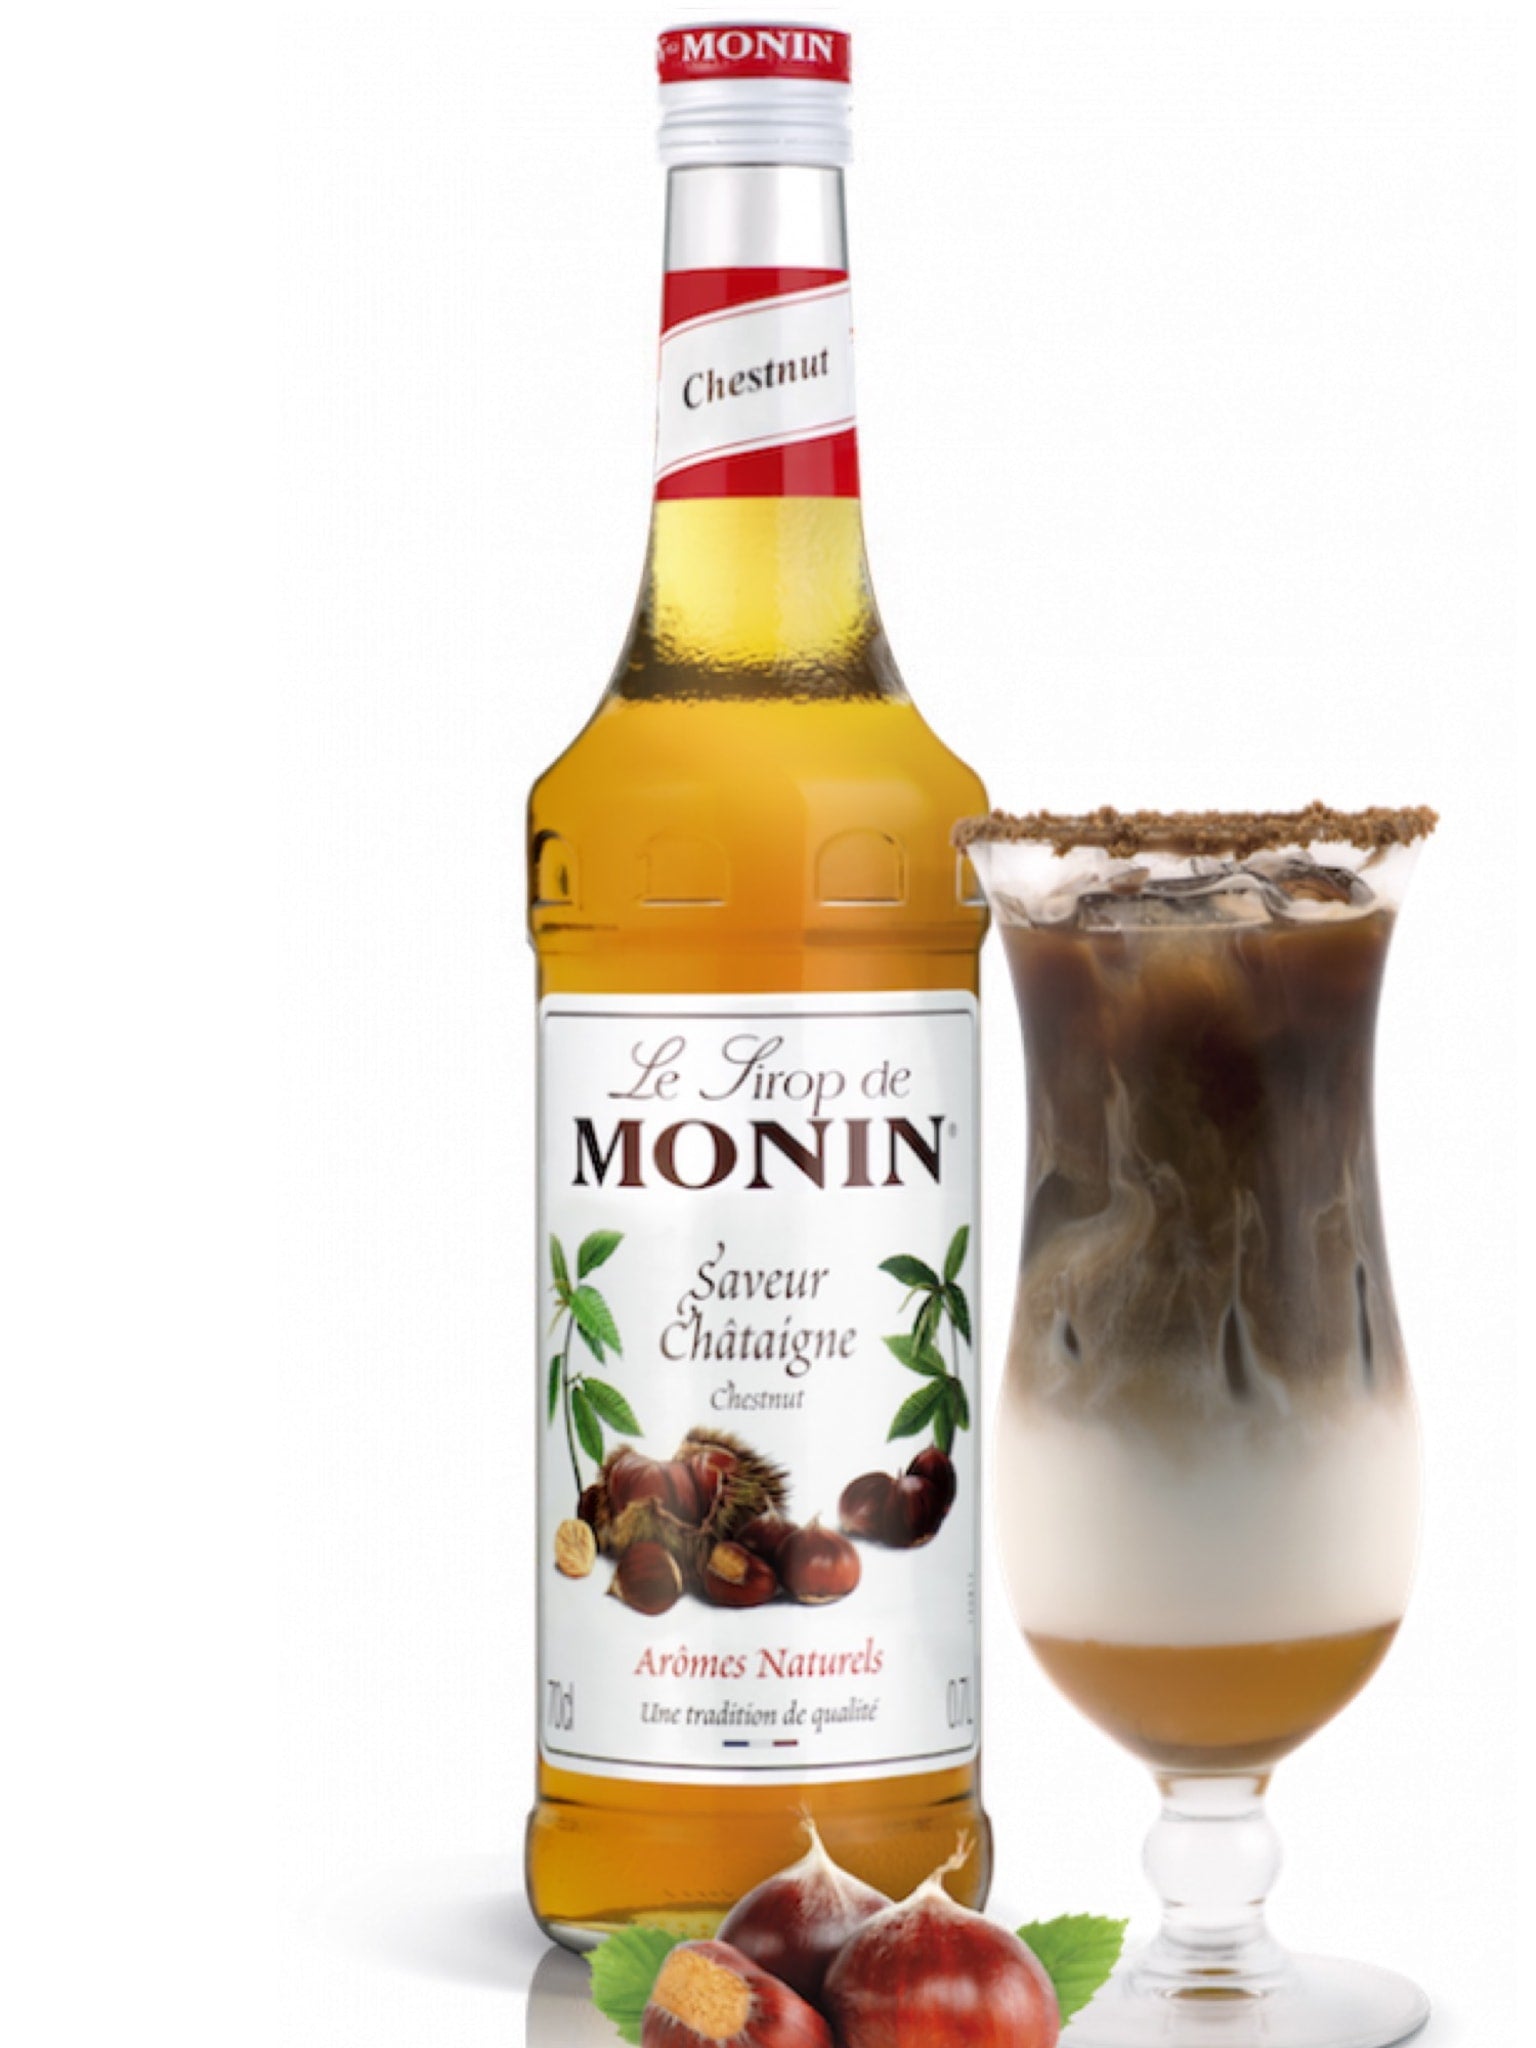 Tilføj en behagelig varme til dine favoritdrikke med Monin Kastanje Sirup, perfekt til efteråre